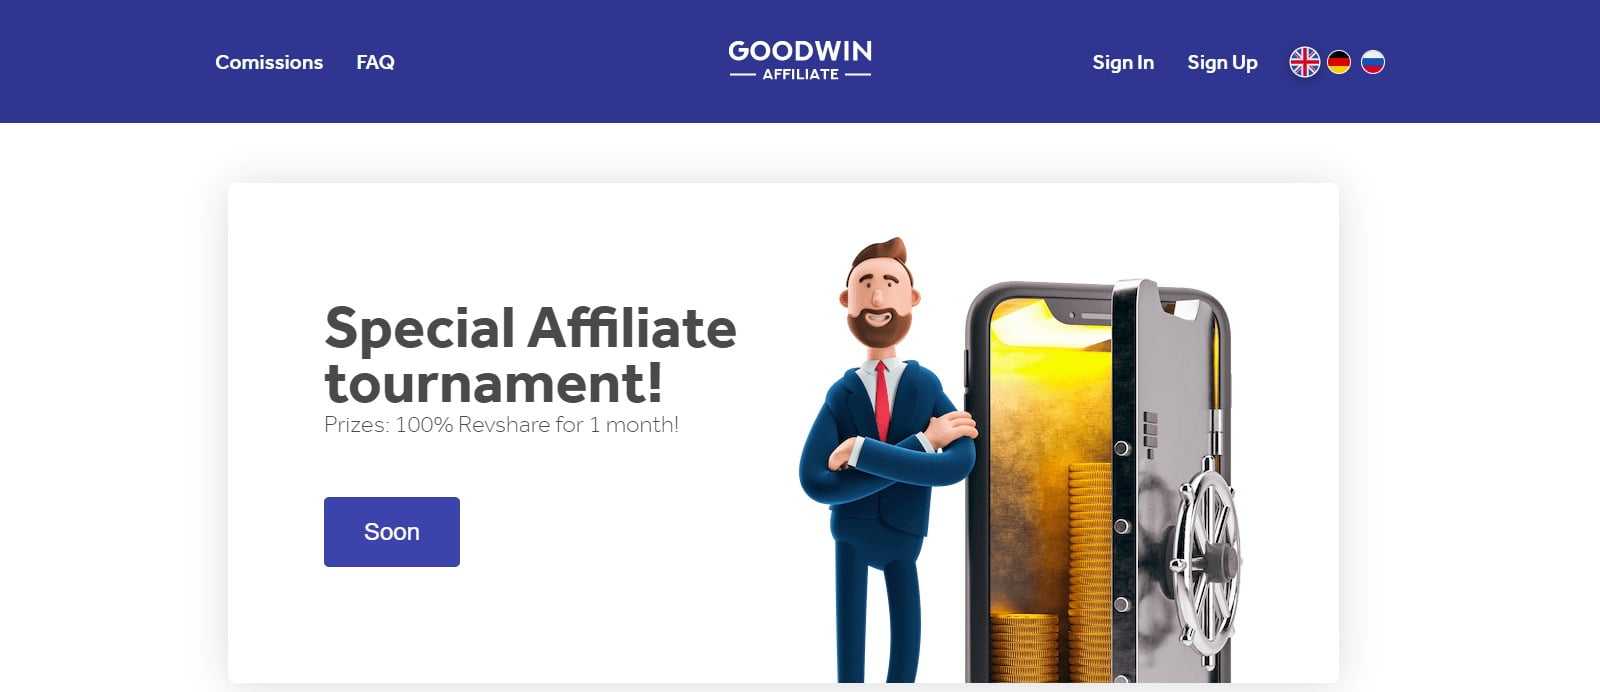 Goodwin Affiliates Program Review: 45% Commission on Each sale